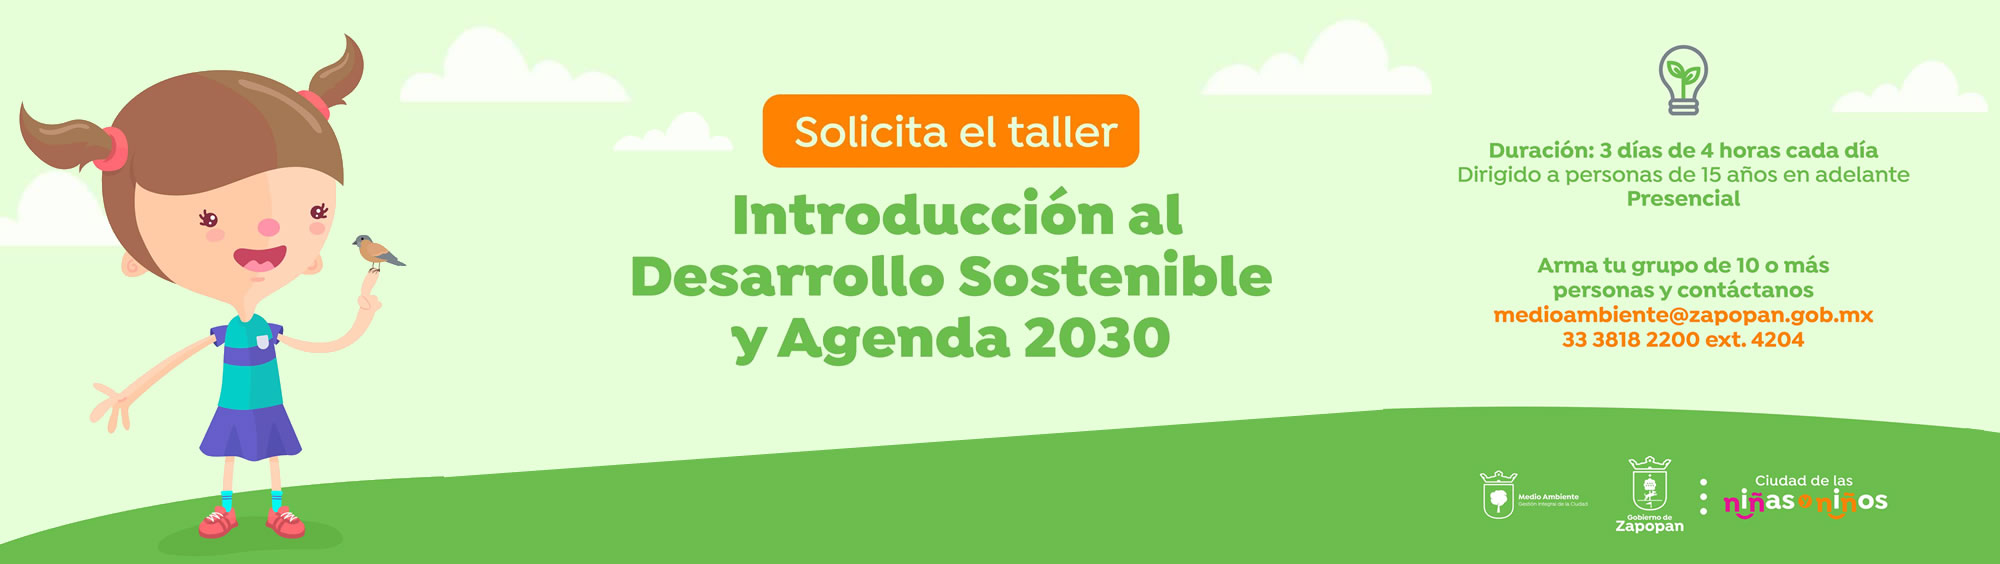 Solicita el taller Introducción al Desarrollo Sostenible y Agenda 2030